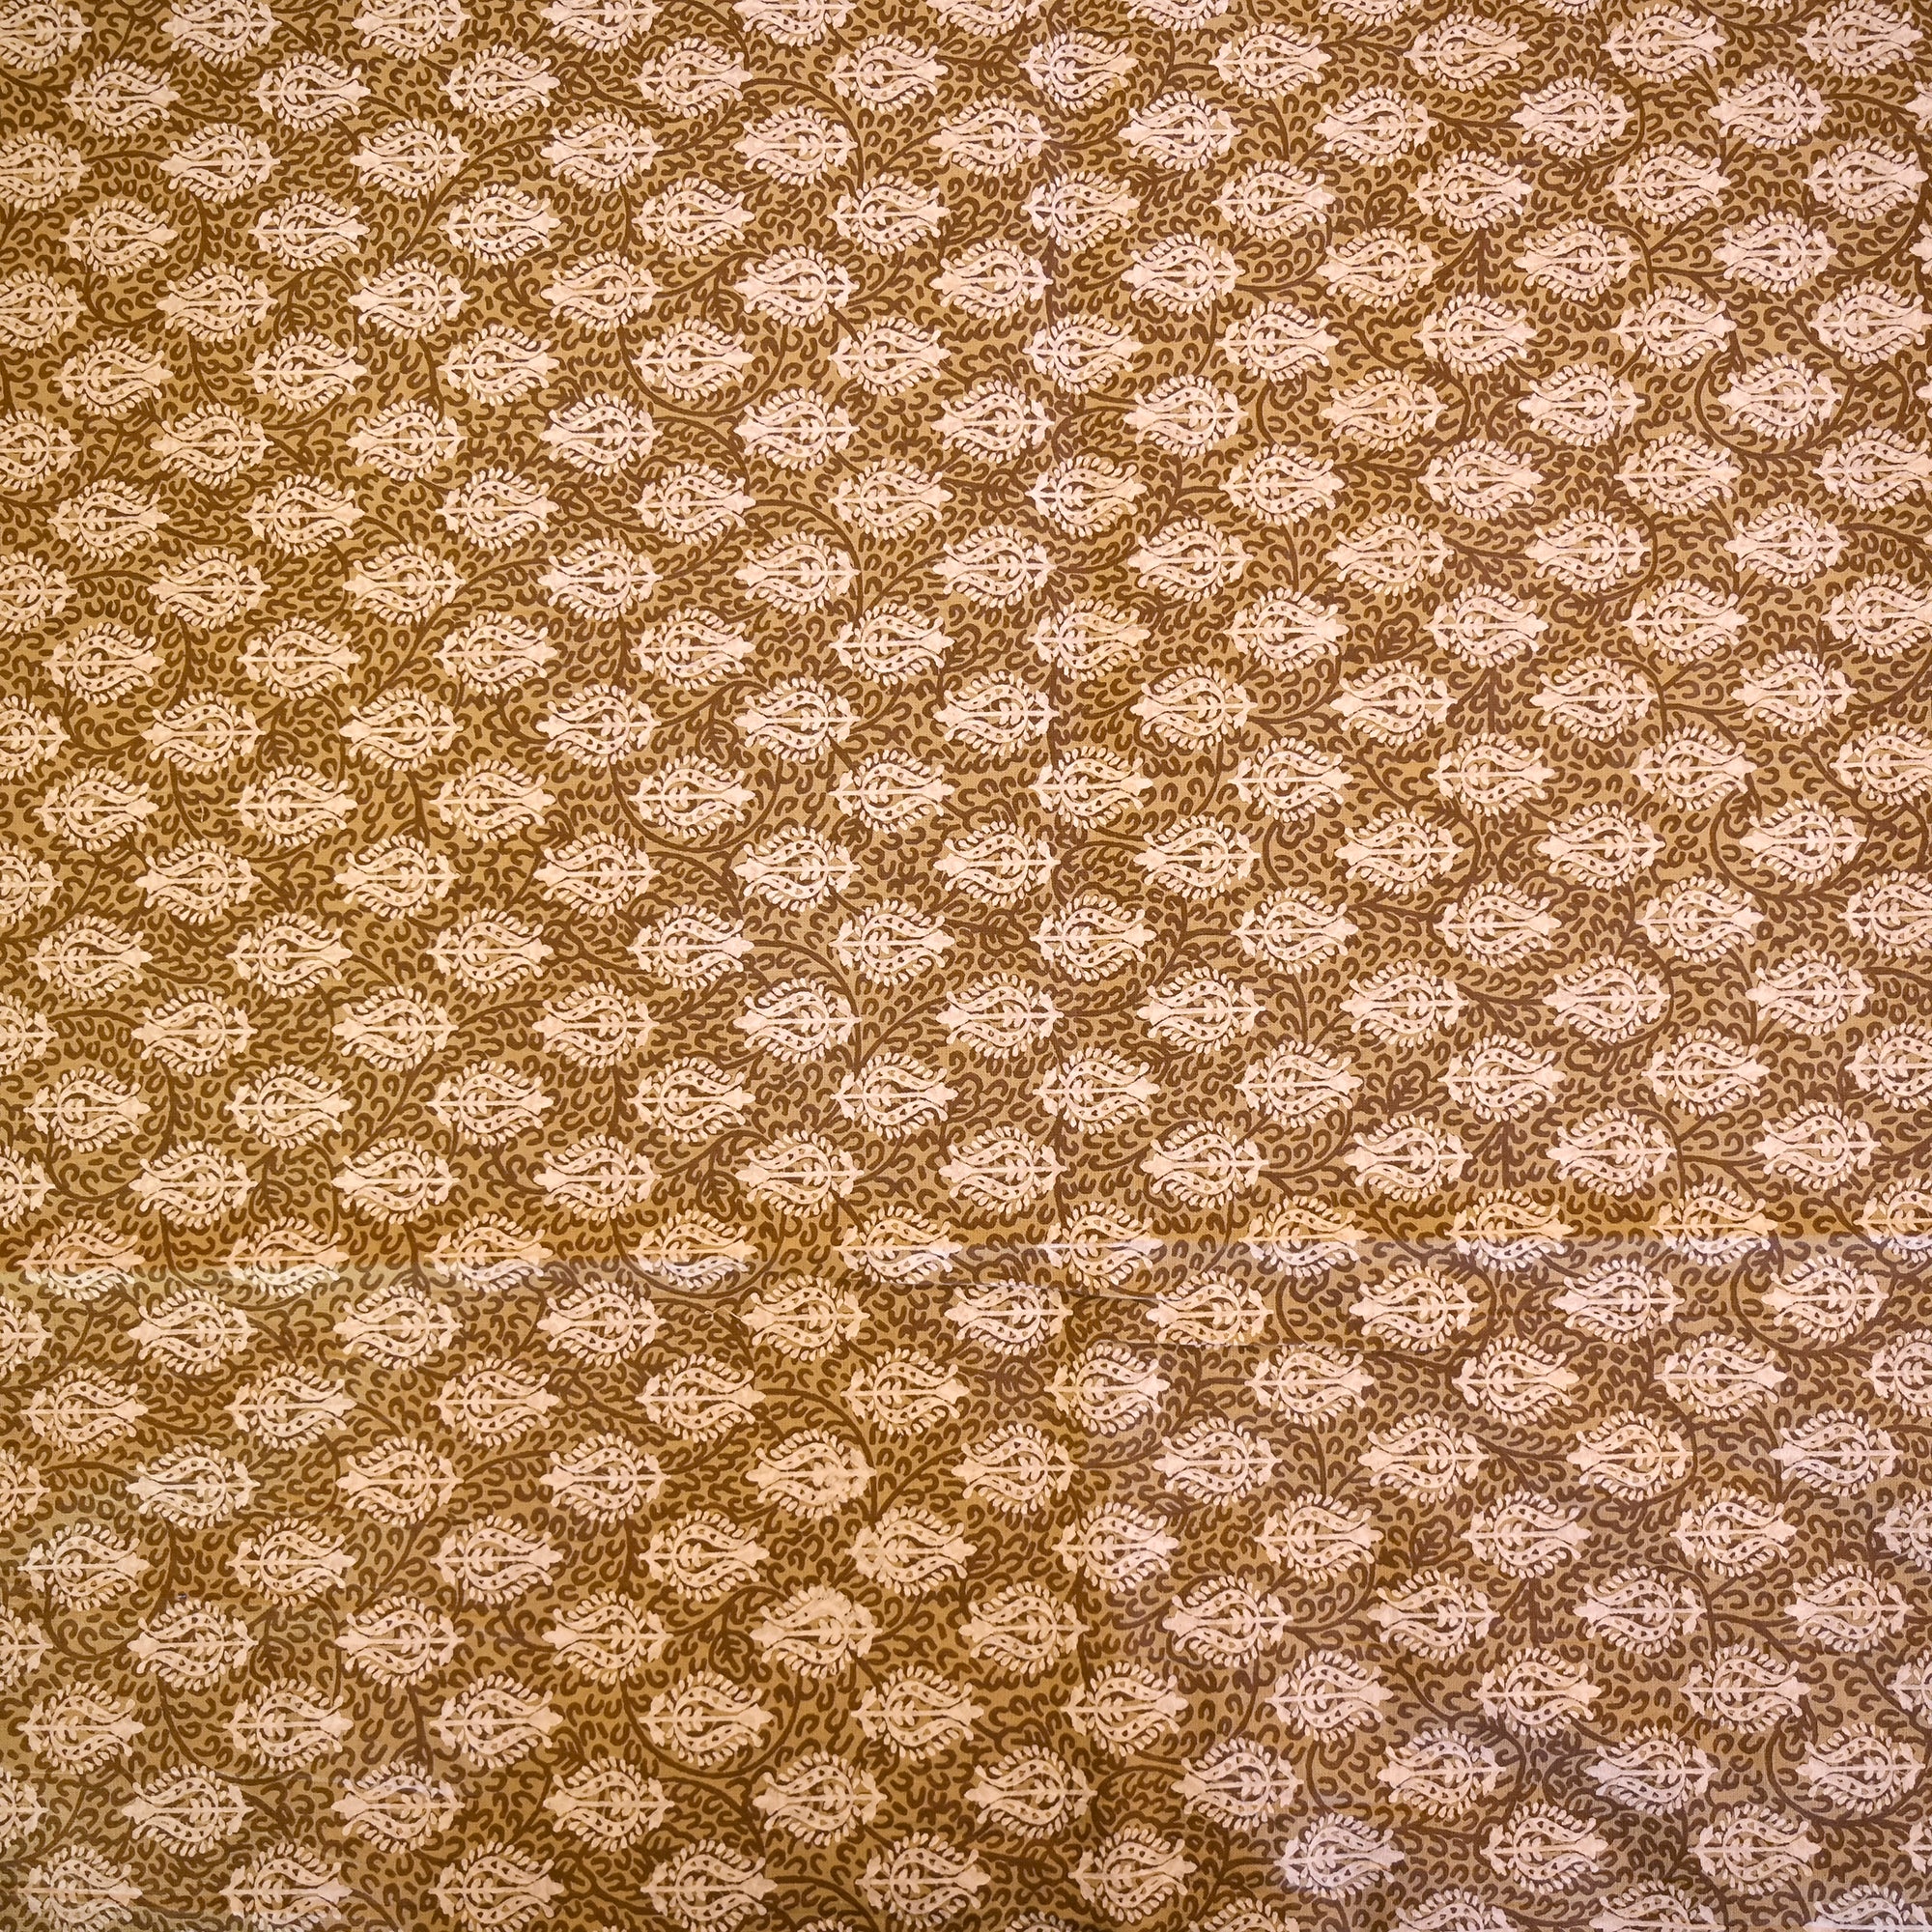 Jaipuri Cotton Printed Bedsheet